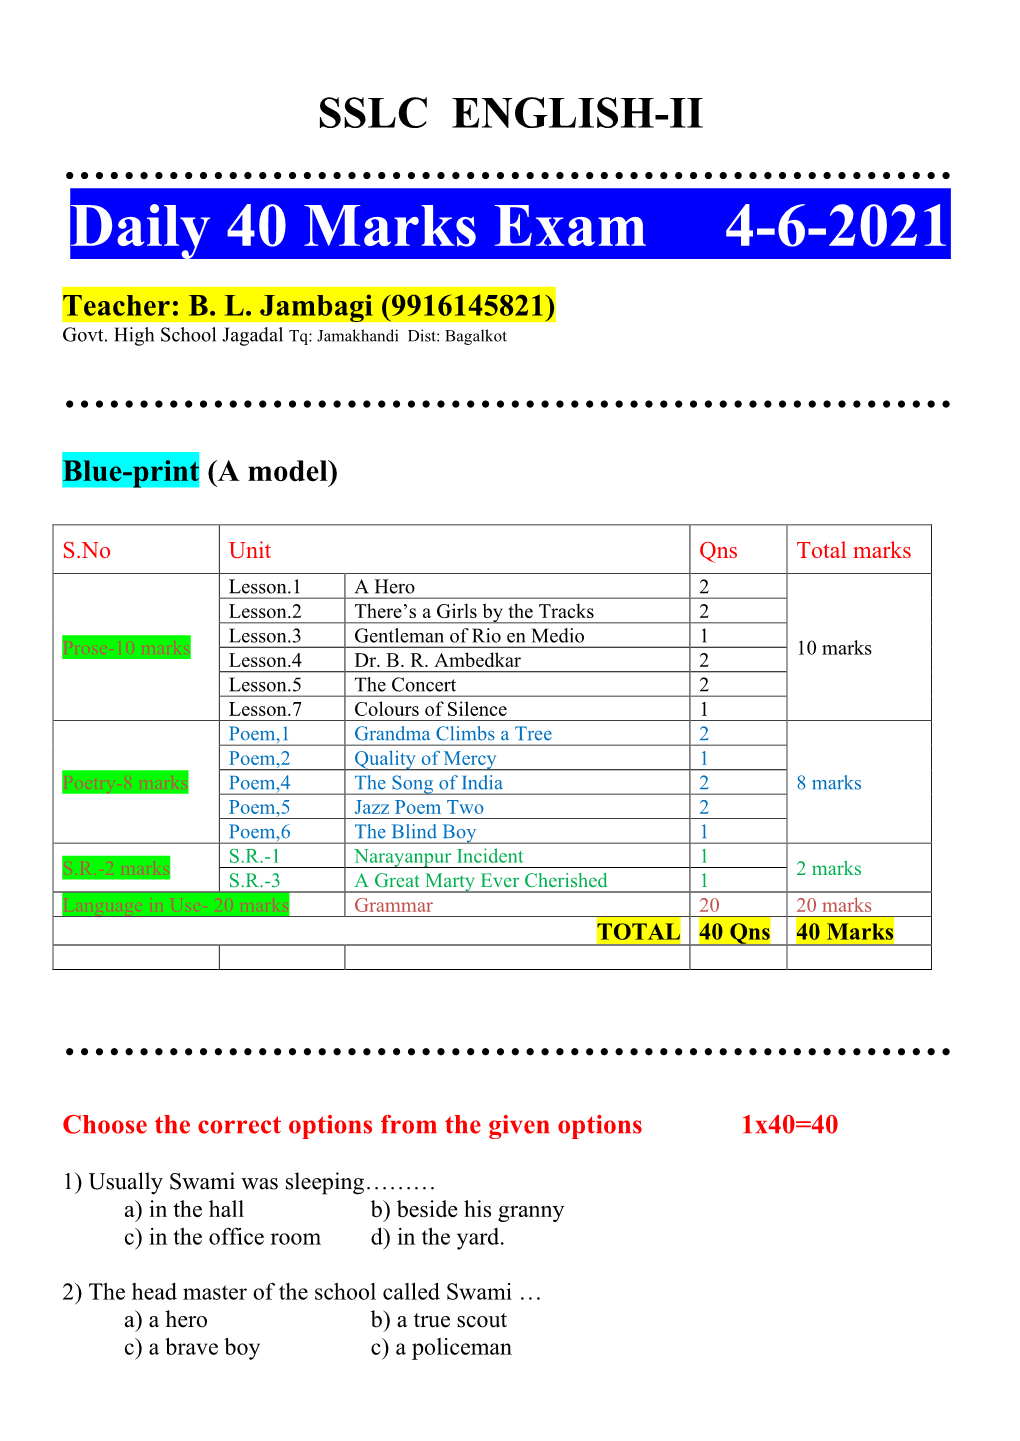 Daily 40 Marks Exam 4-6-2021 Teacher: BL